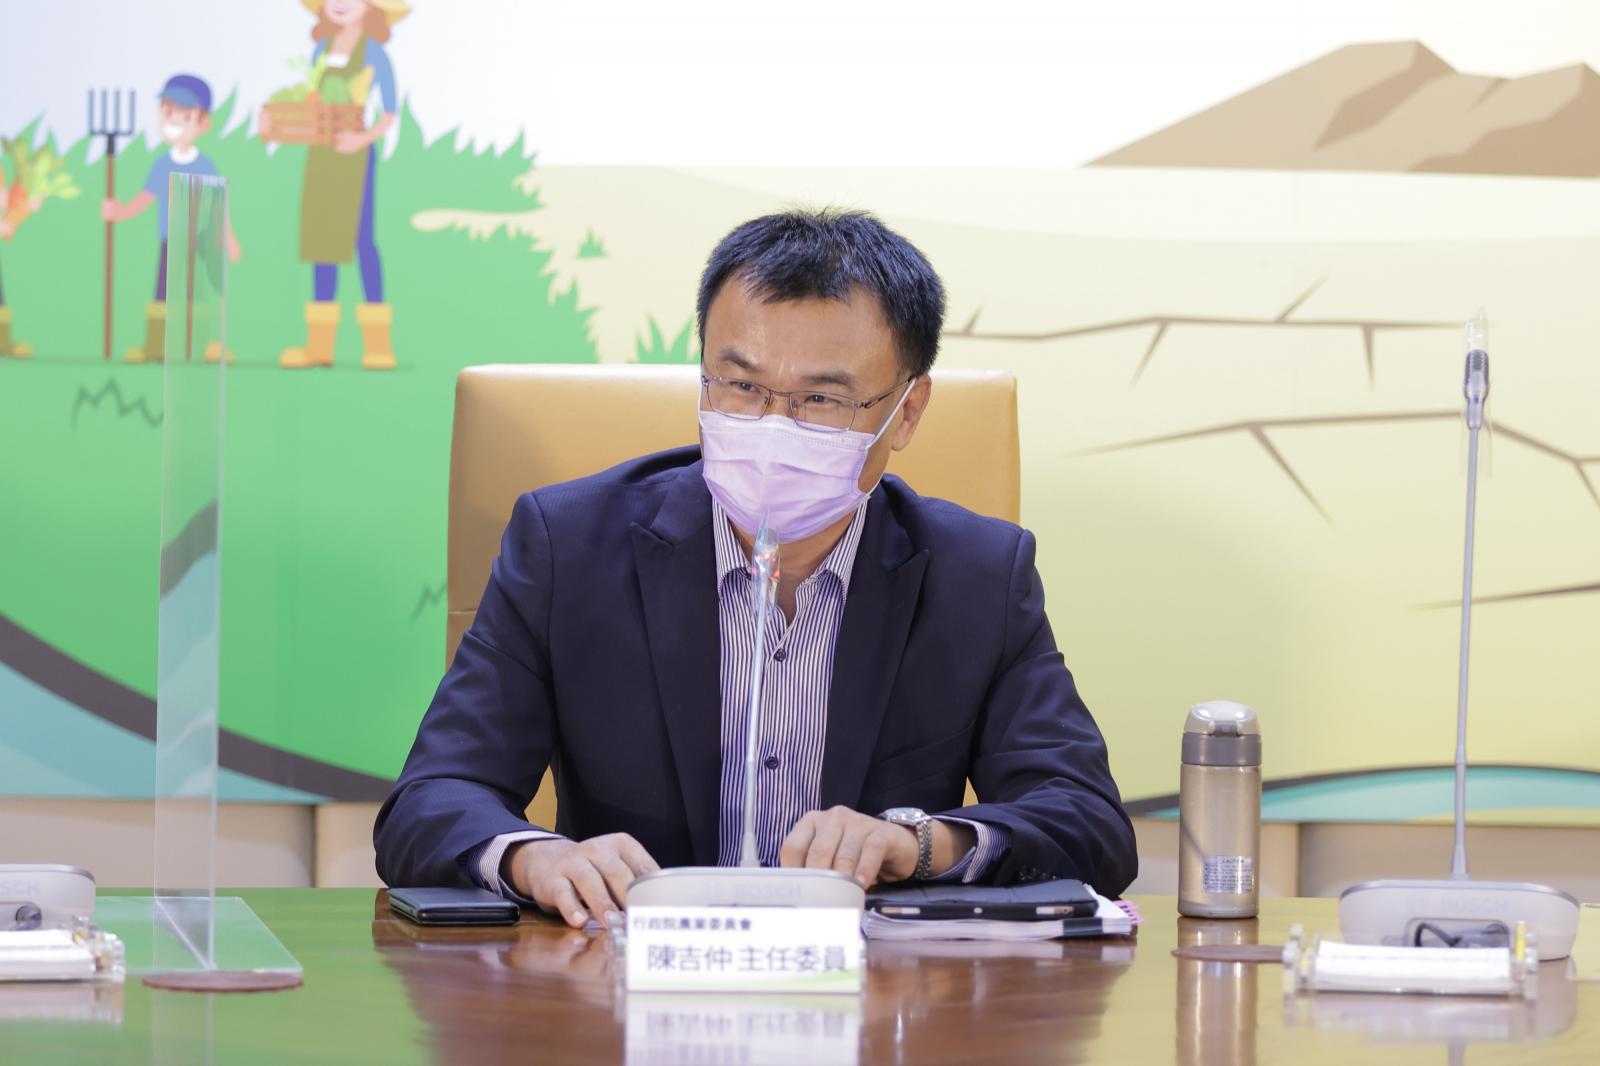 農委會主委陳吉仲於座談會中宣示將成立專責淨零辦公室